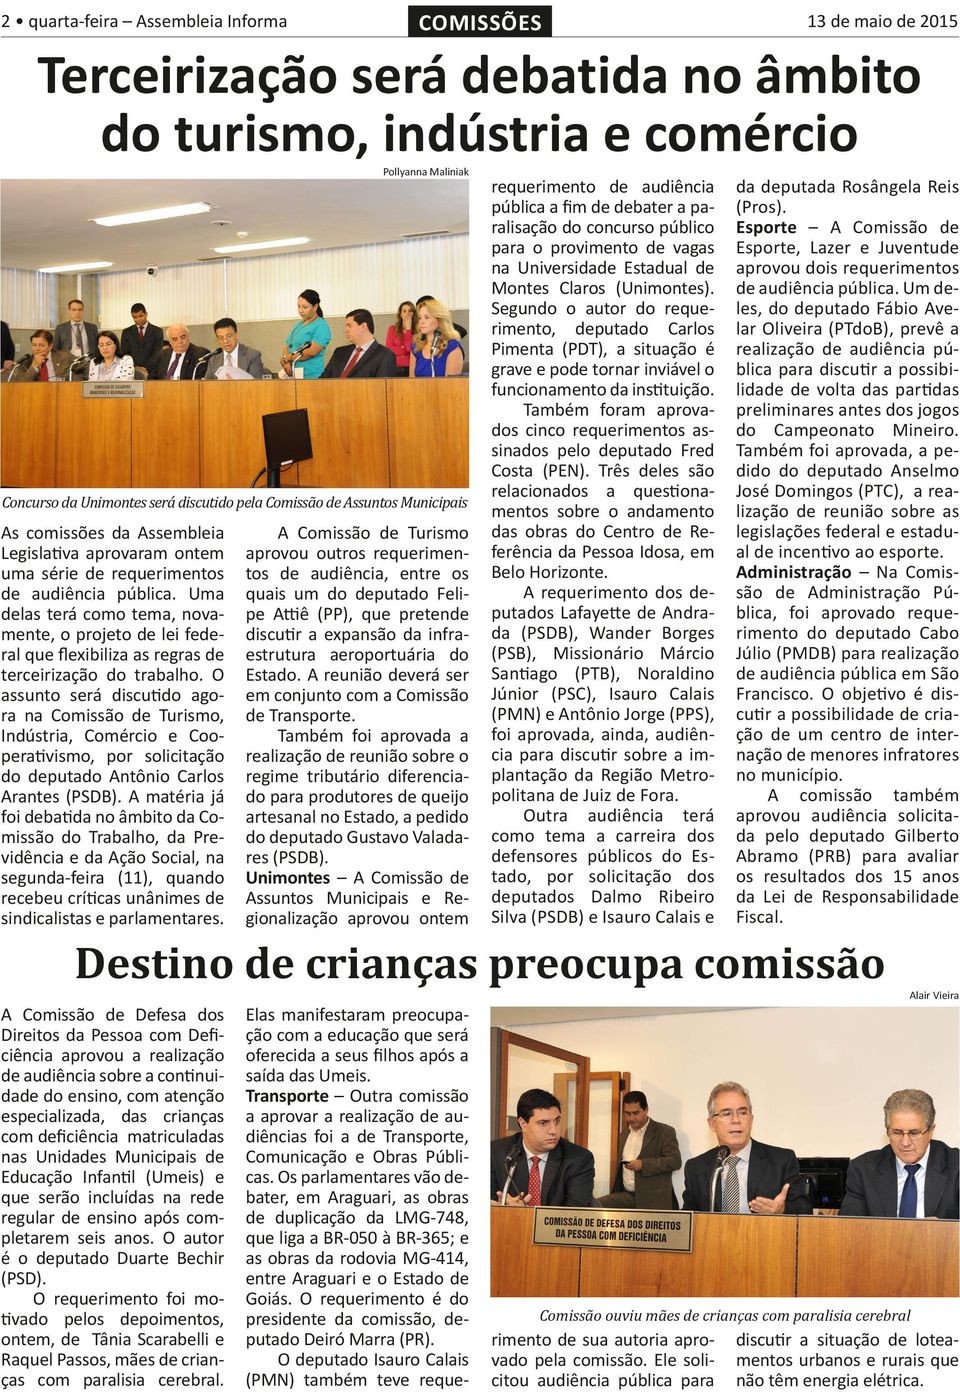 O assunto será discutido agora na Comissão de Turismo, Indústria, Comércio e Cooperativismo, por solicitação do deputado Antônio Carlos Arantes (PSDB).